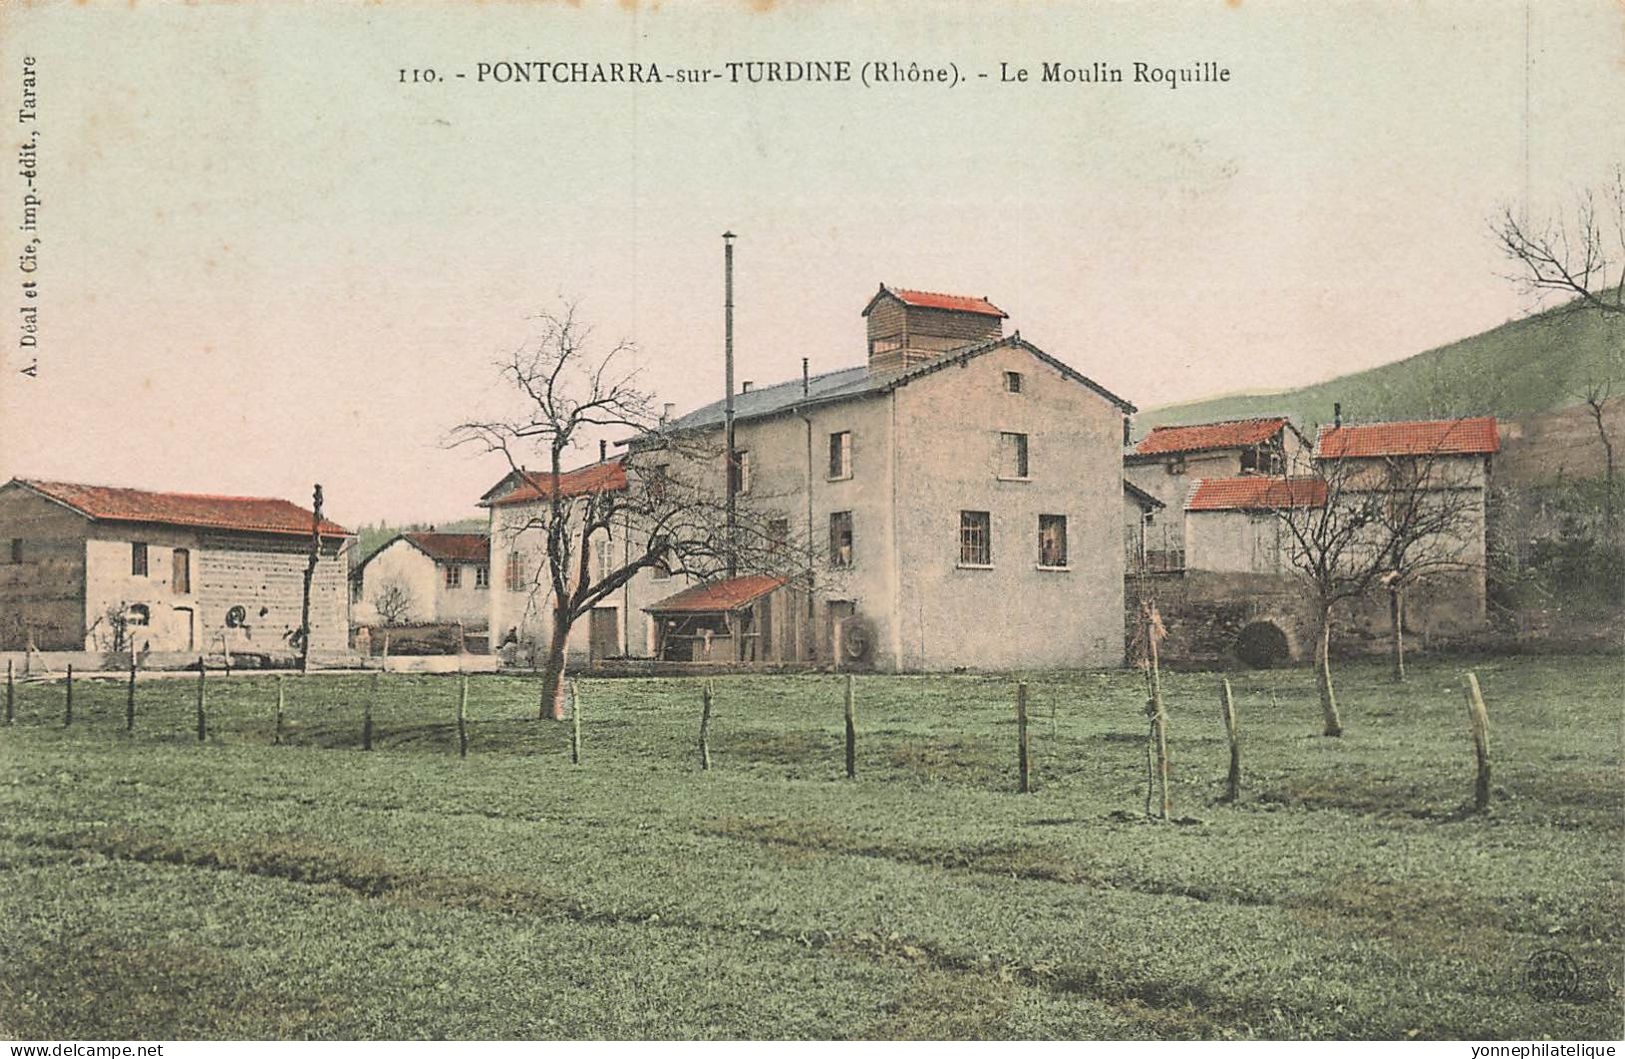 69 - RHÔNE - PONTCHARRA-SUR-TURDINE - Le Moulin Roquille - Colorisée - 10923 - Pontcharra-sur-Turdine